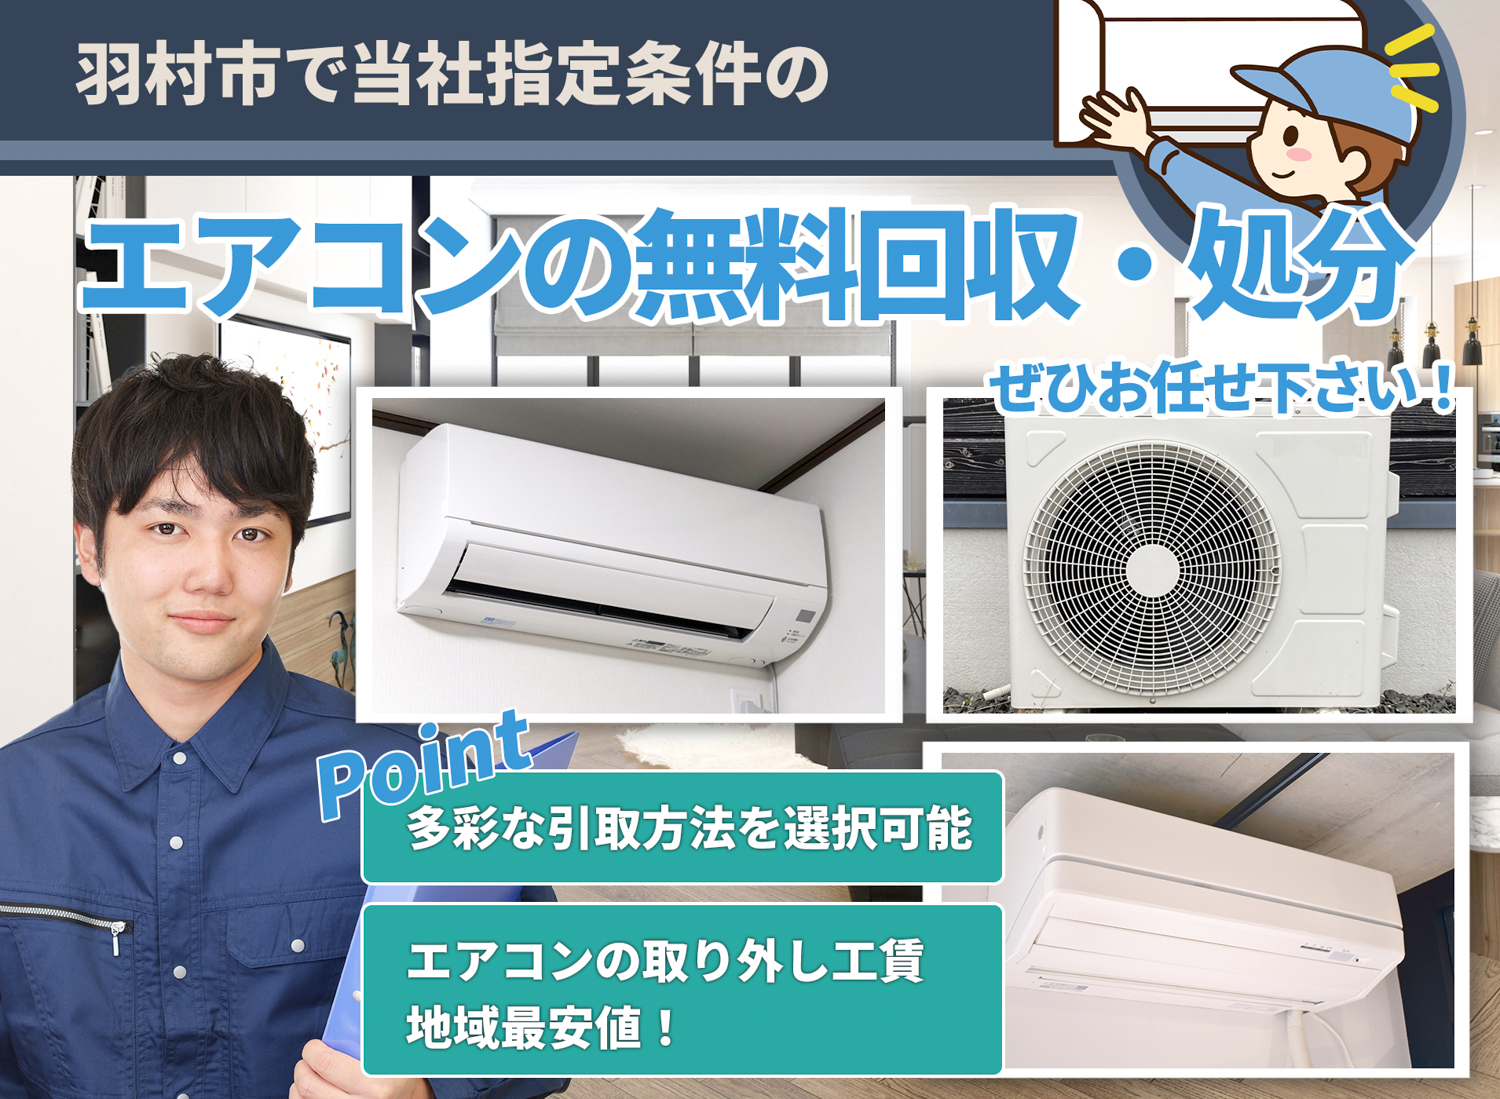 羽村市のサービスで地域一番を目指すエアコン無料回収処分隊のエアコン無料回収サービス